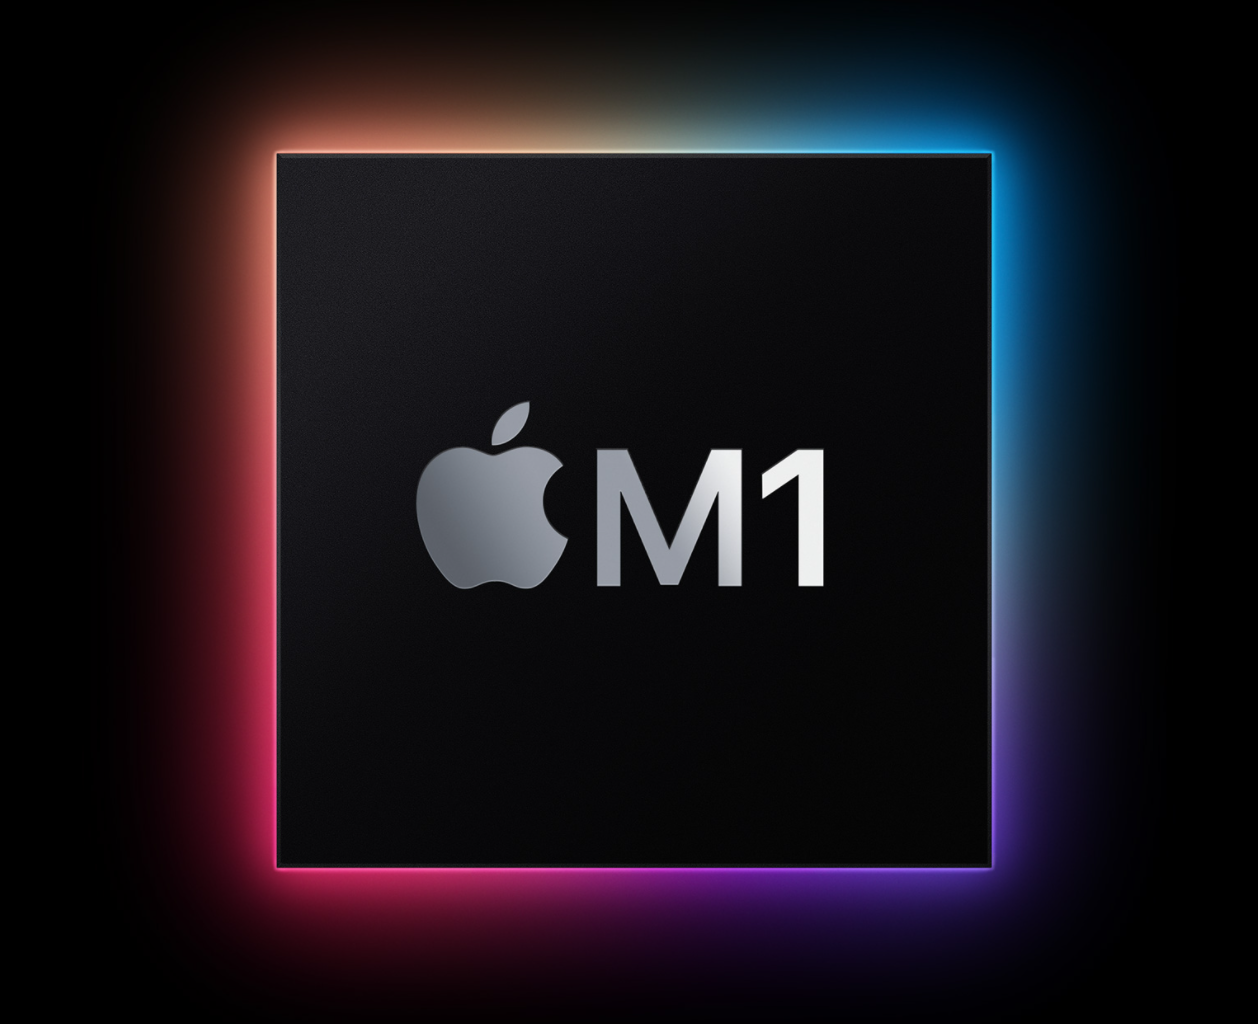 애플에서 개발한 M1 칩셋